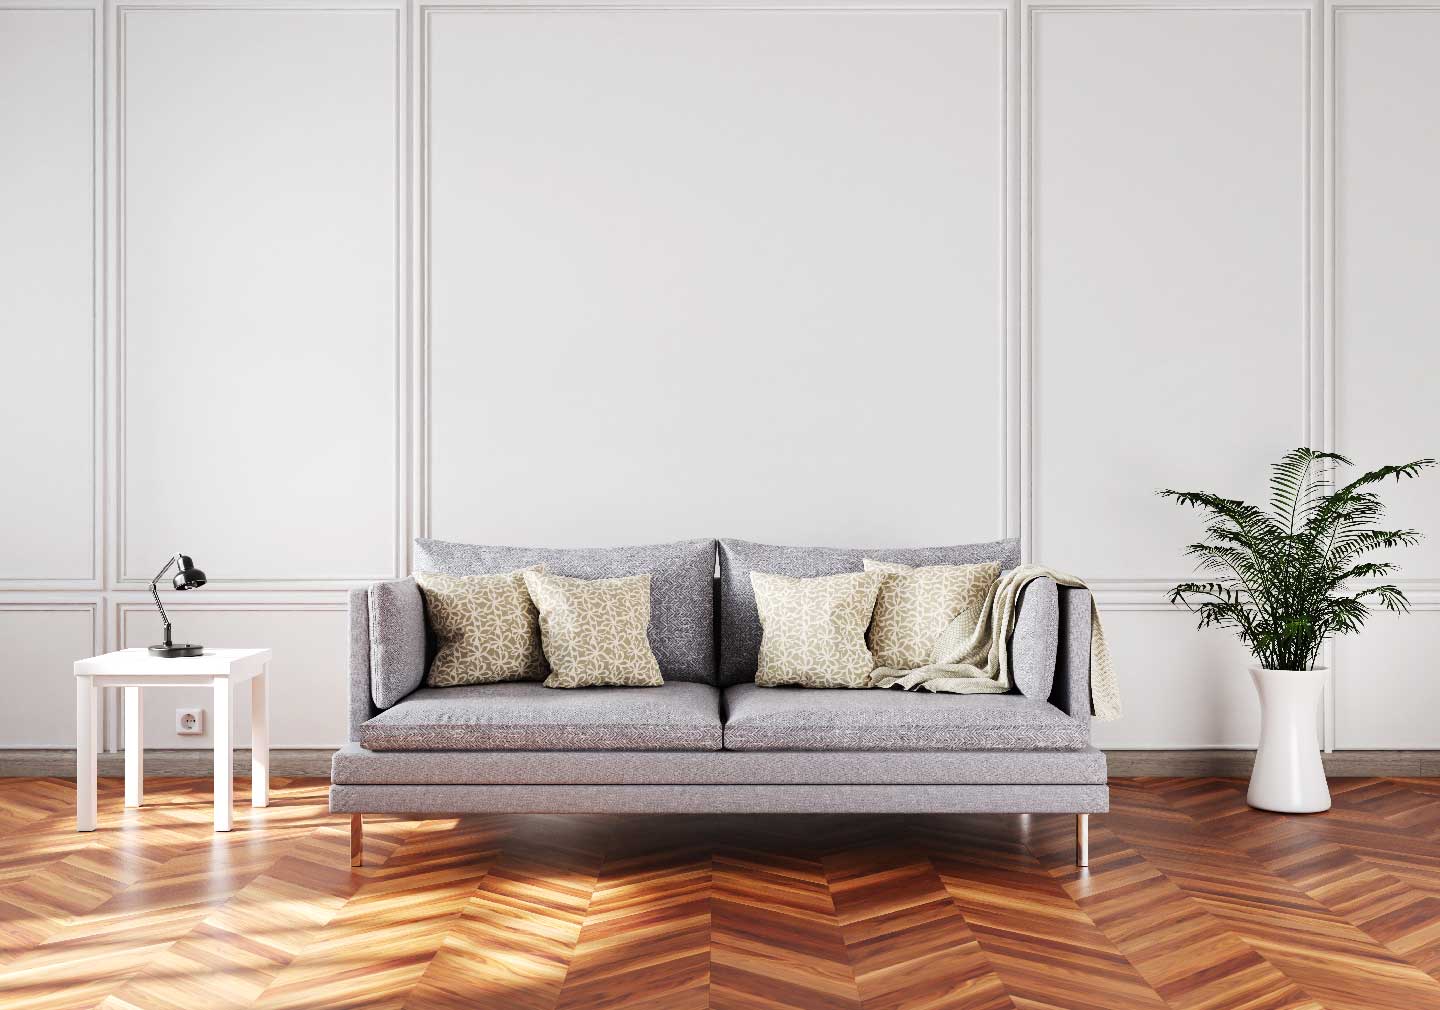 living room floor design with wooden flooring